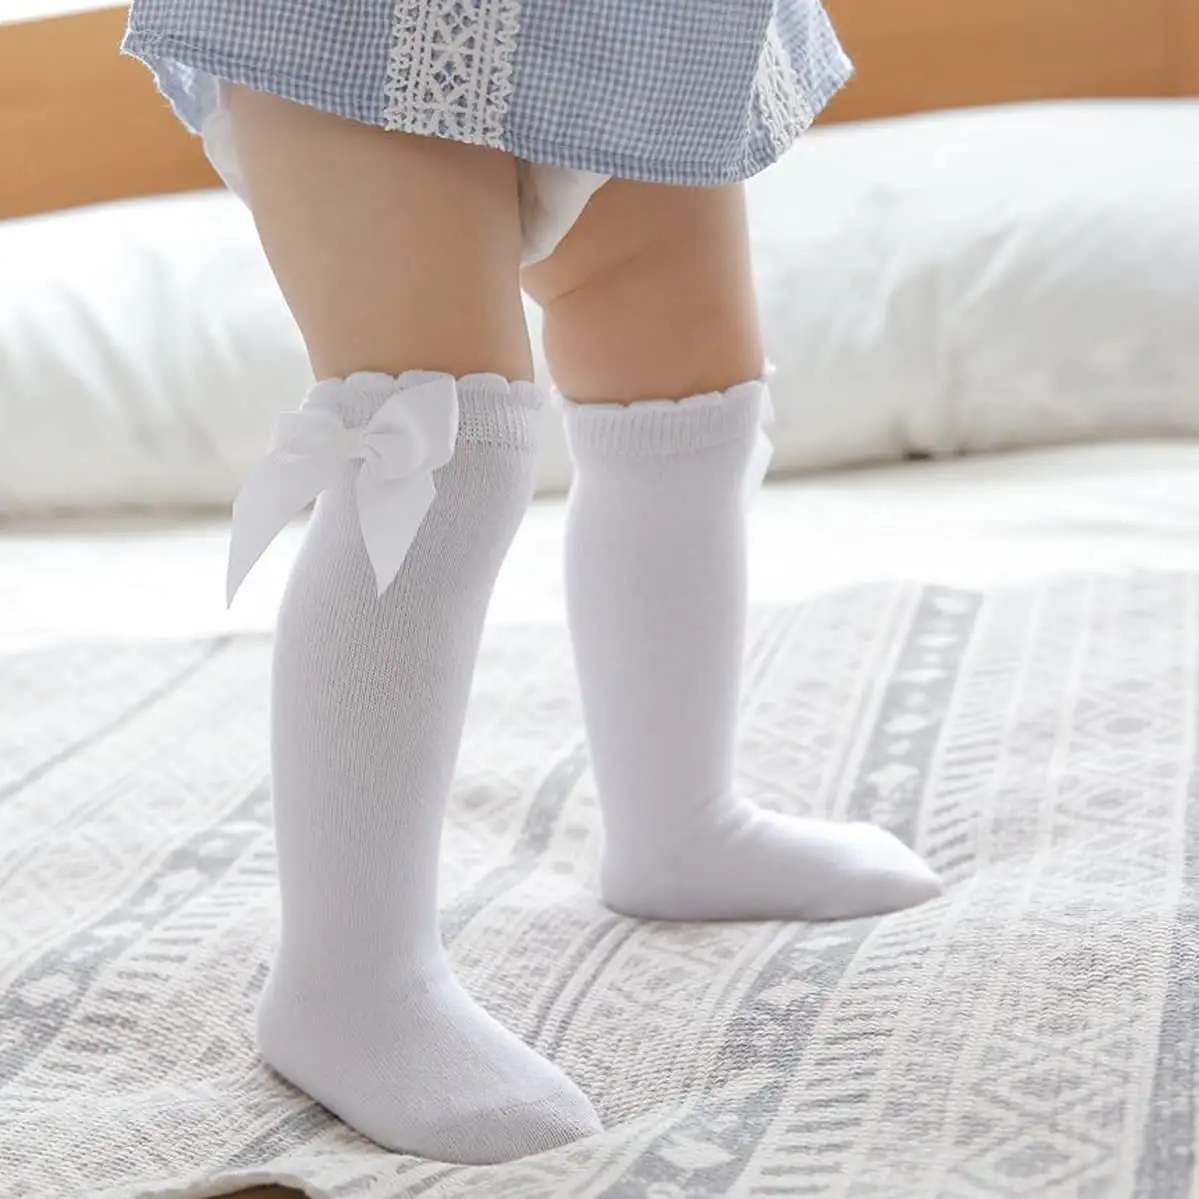 ถุงเท้ายาวถึงเข่าสำหรับเด็กทารกเด็กผู้หญิง,ถุงเท้ายาวติดโบว์แพค3/6ถุงเท้ายาวมีระบายสำหรับเด็กเล็กเลกกิ้งเครื่องแบบนักเรียน